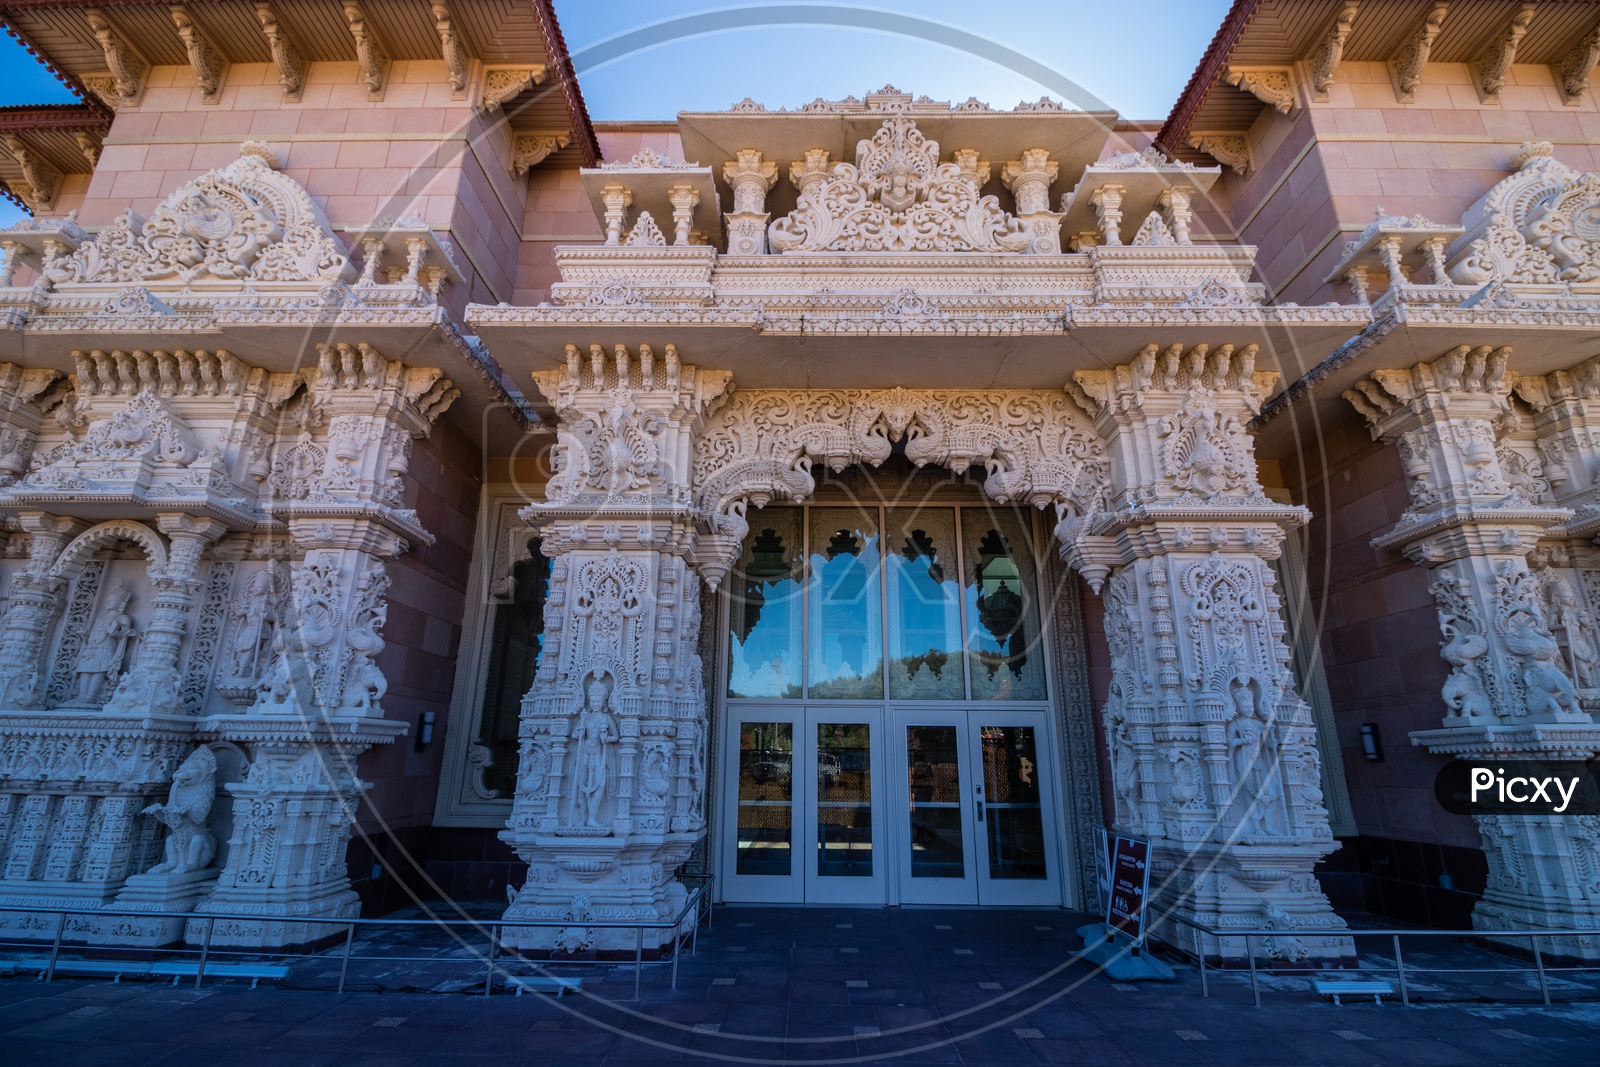 Beautiful facade of the BAPS Swami Narayan Mandir, NJ, USA